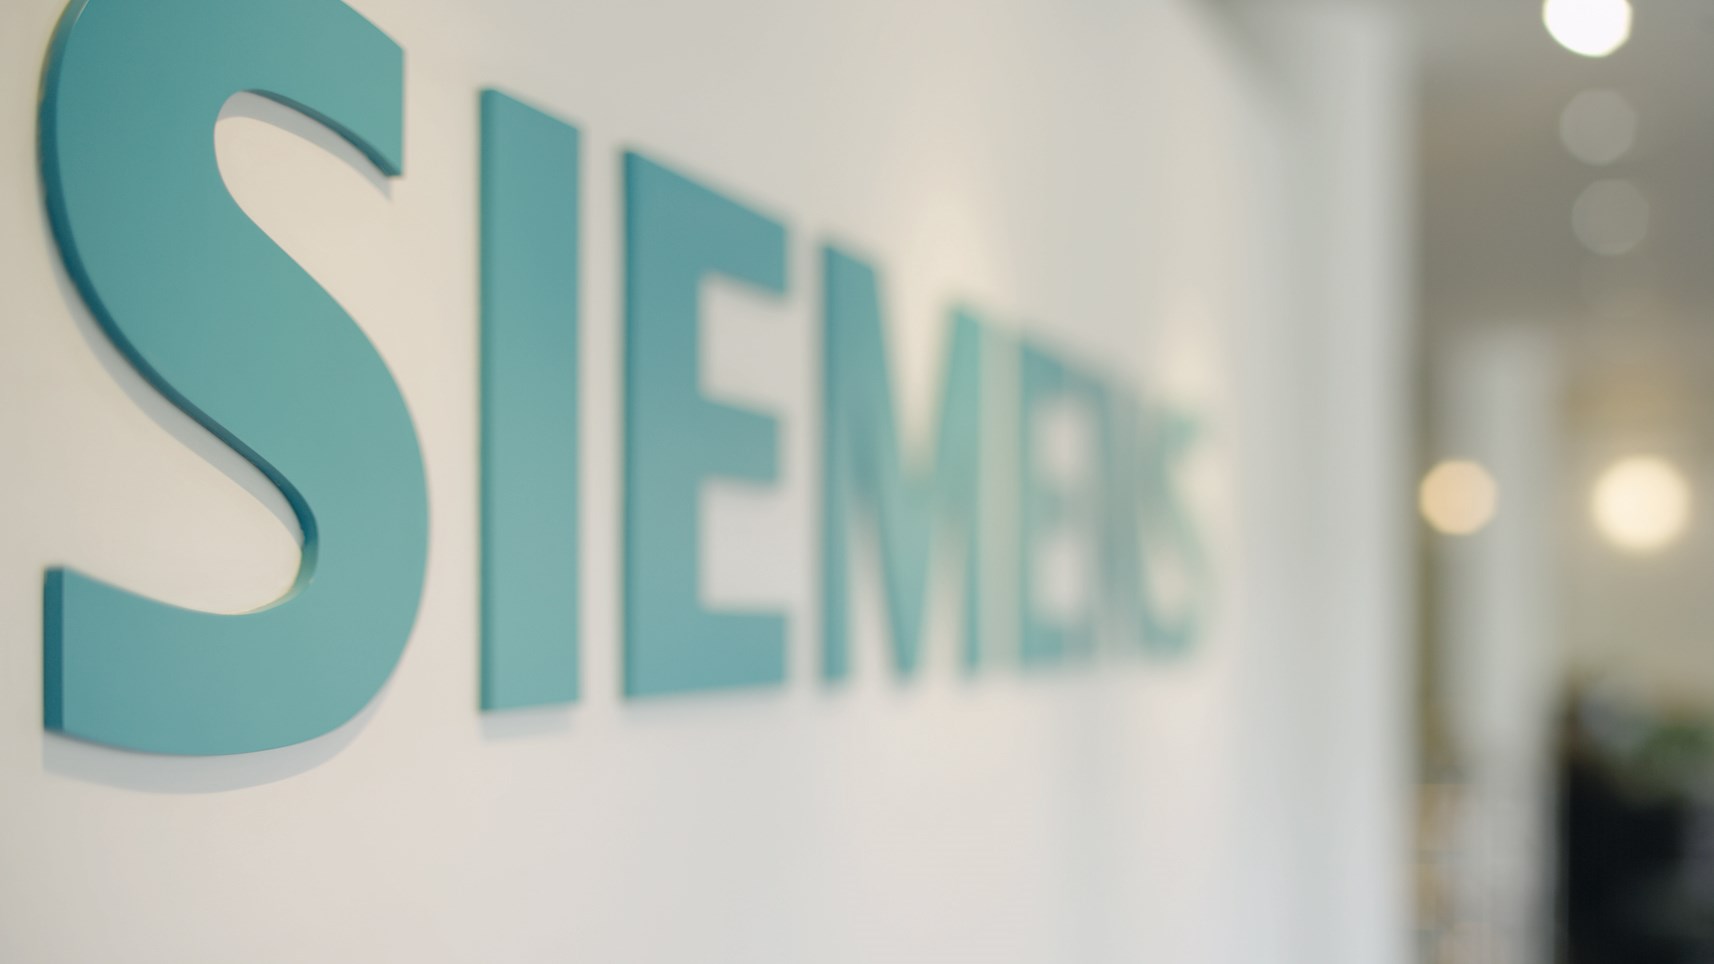 Απορρίφθηκε το αίτημα για εξέταξη του Κυριάκου Μητσοτάκη και της Ντόρας Μπακογιάννη στη δίκη της Siemens